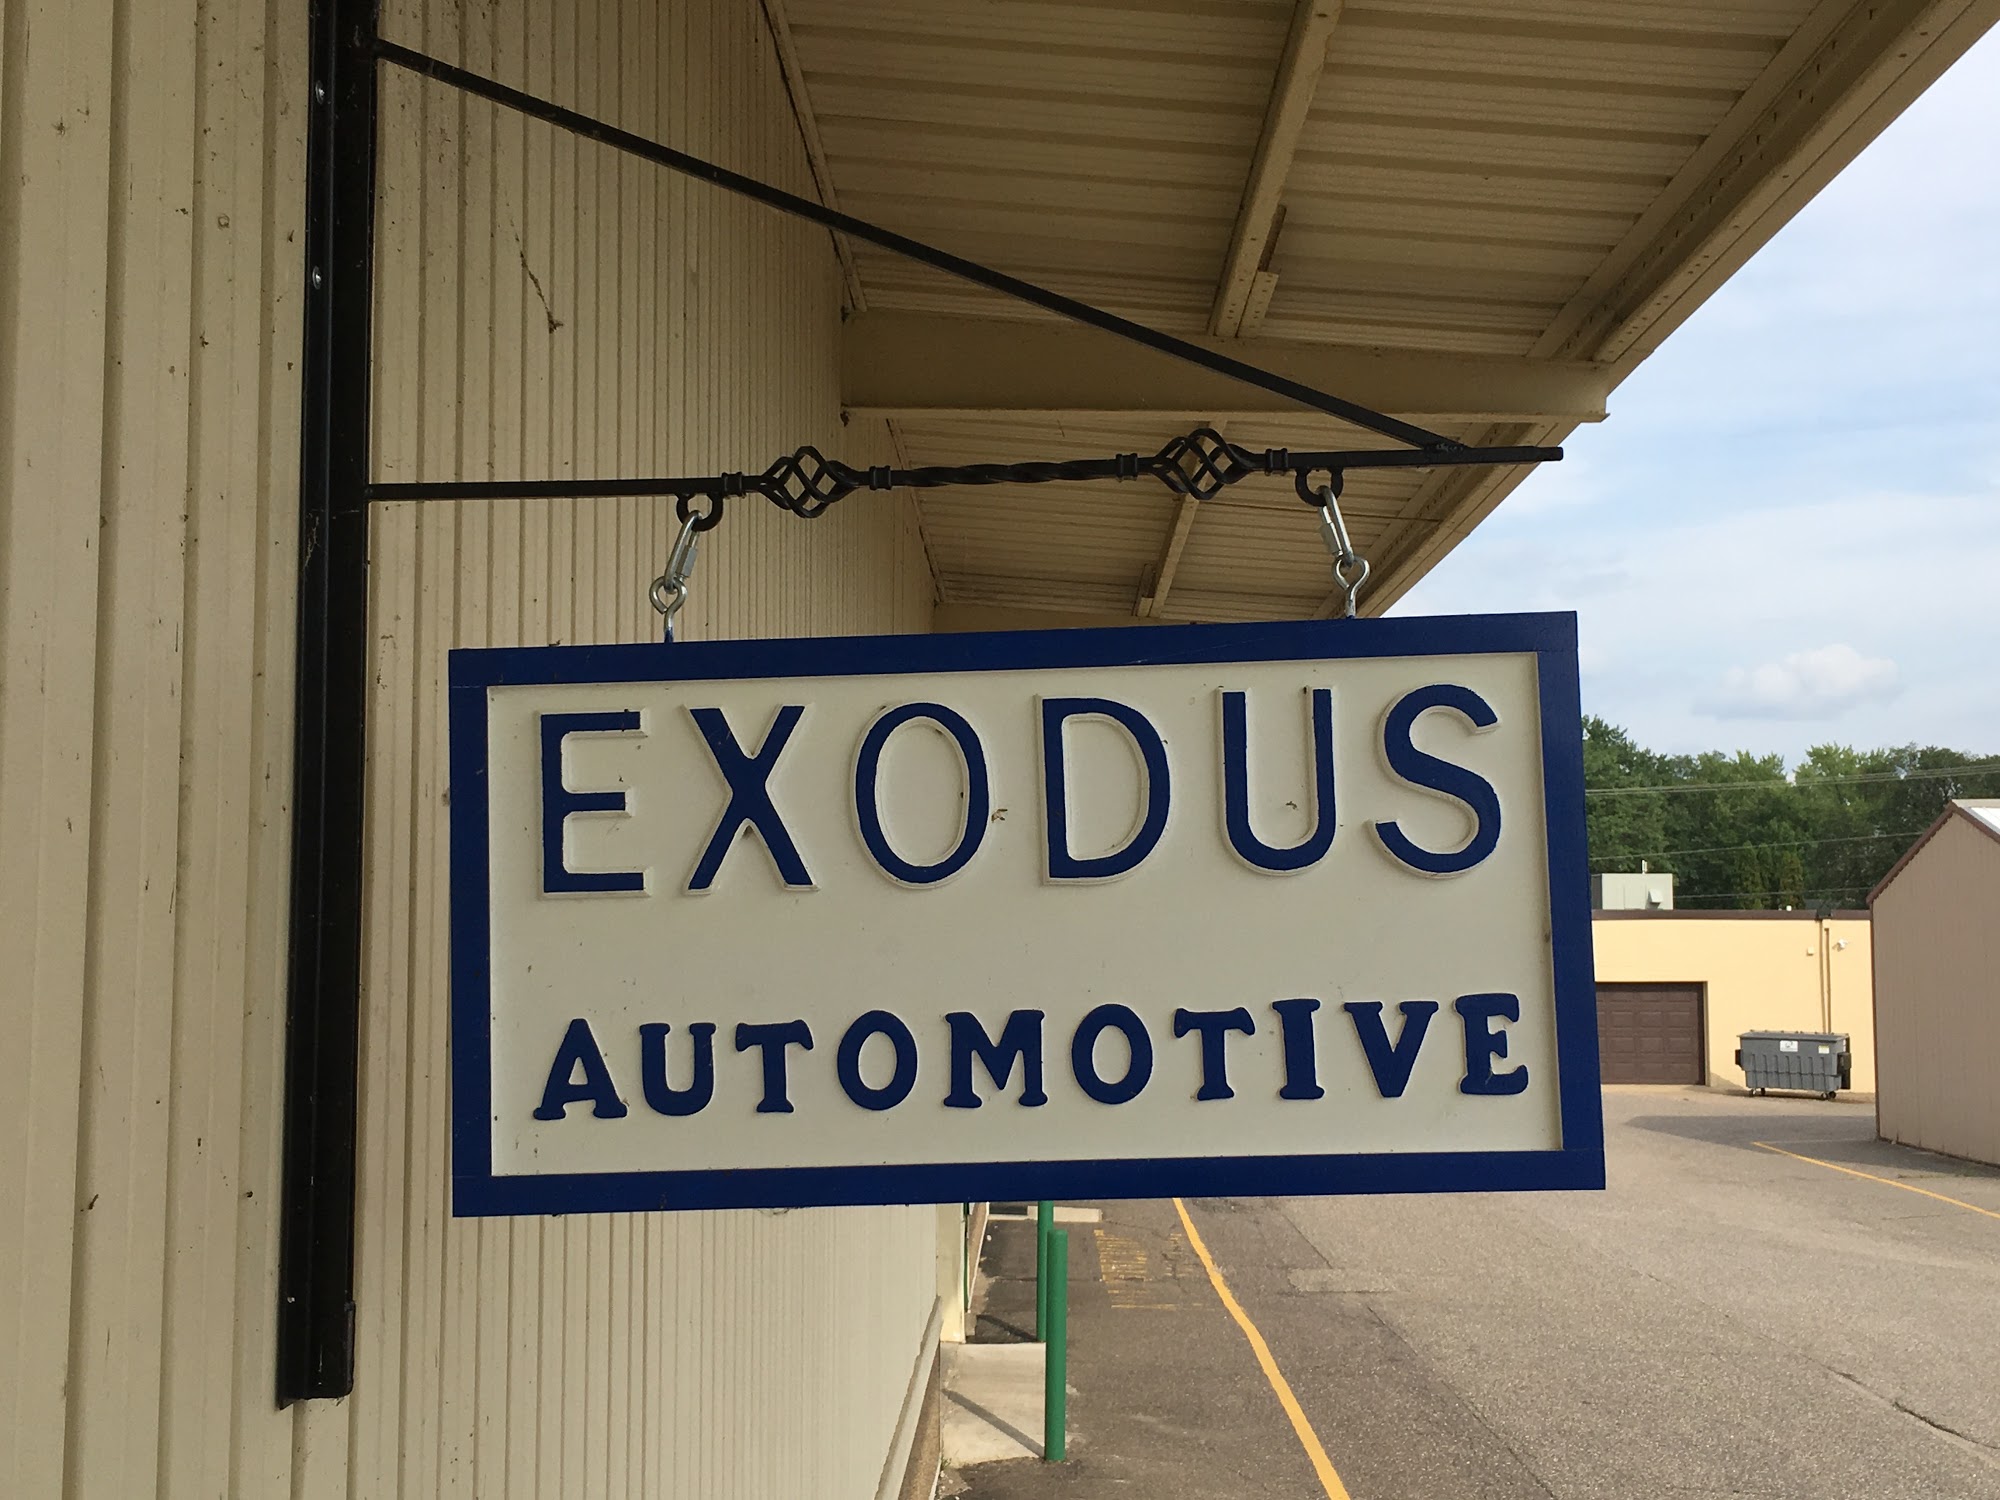 Exodus Automotive